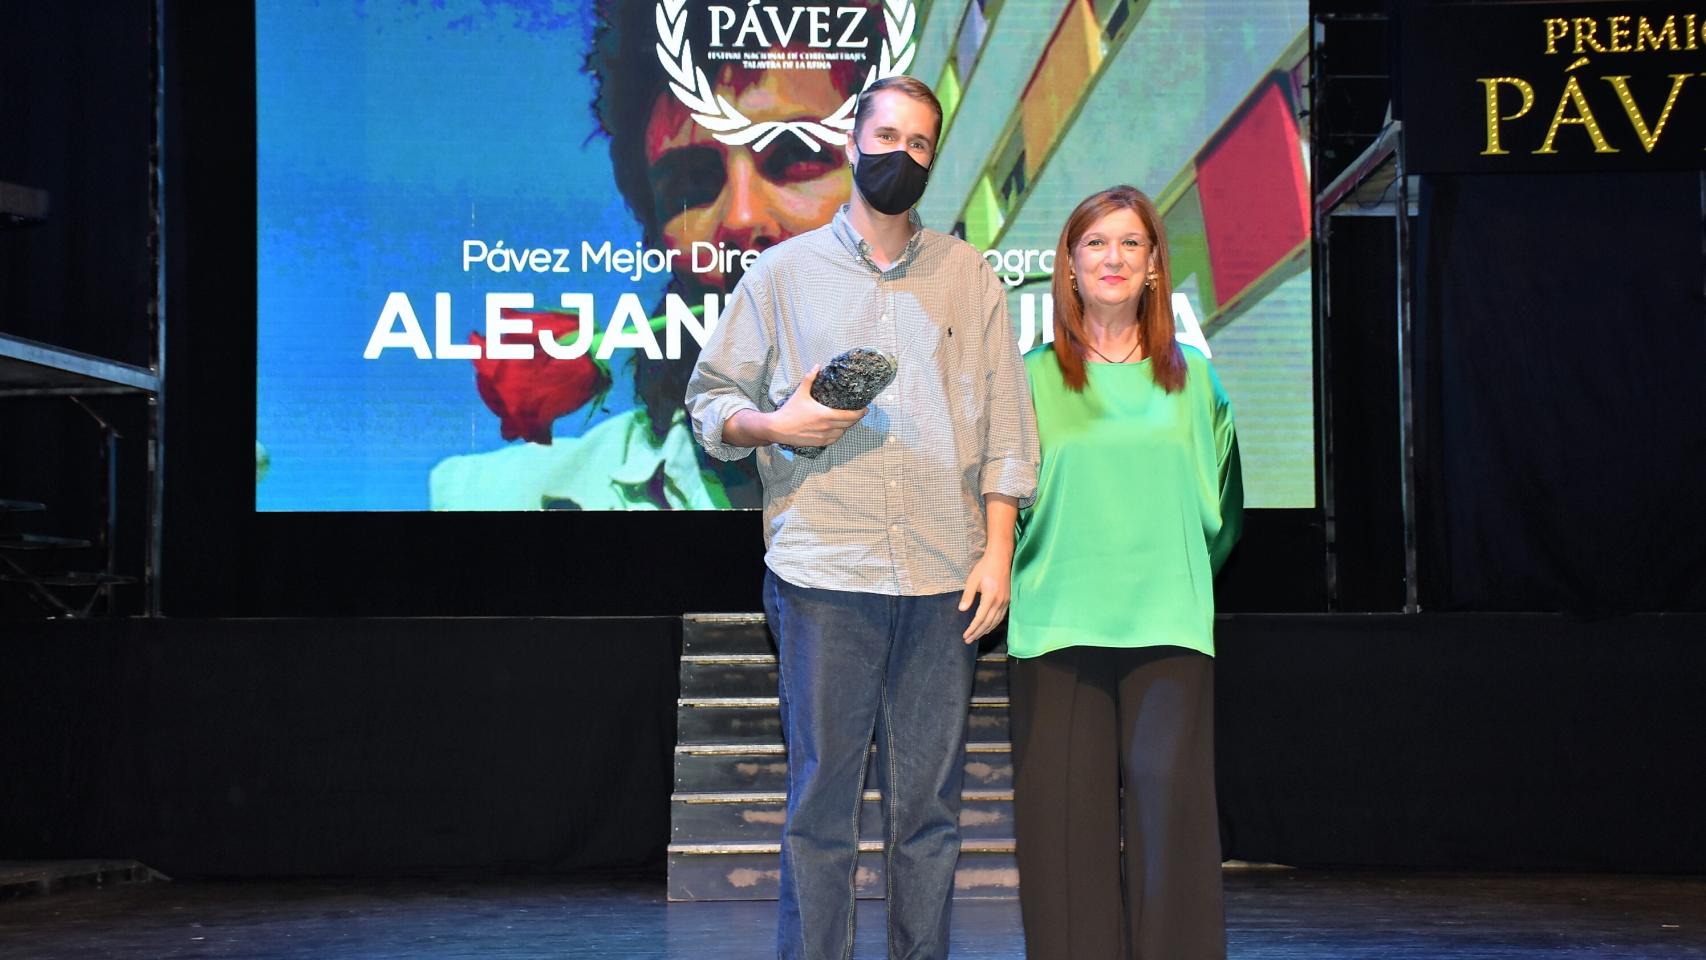 La gala se celebró en el Teatro Palenque